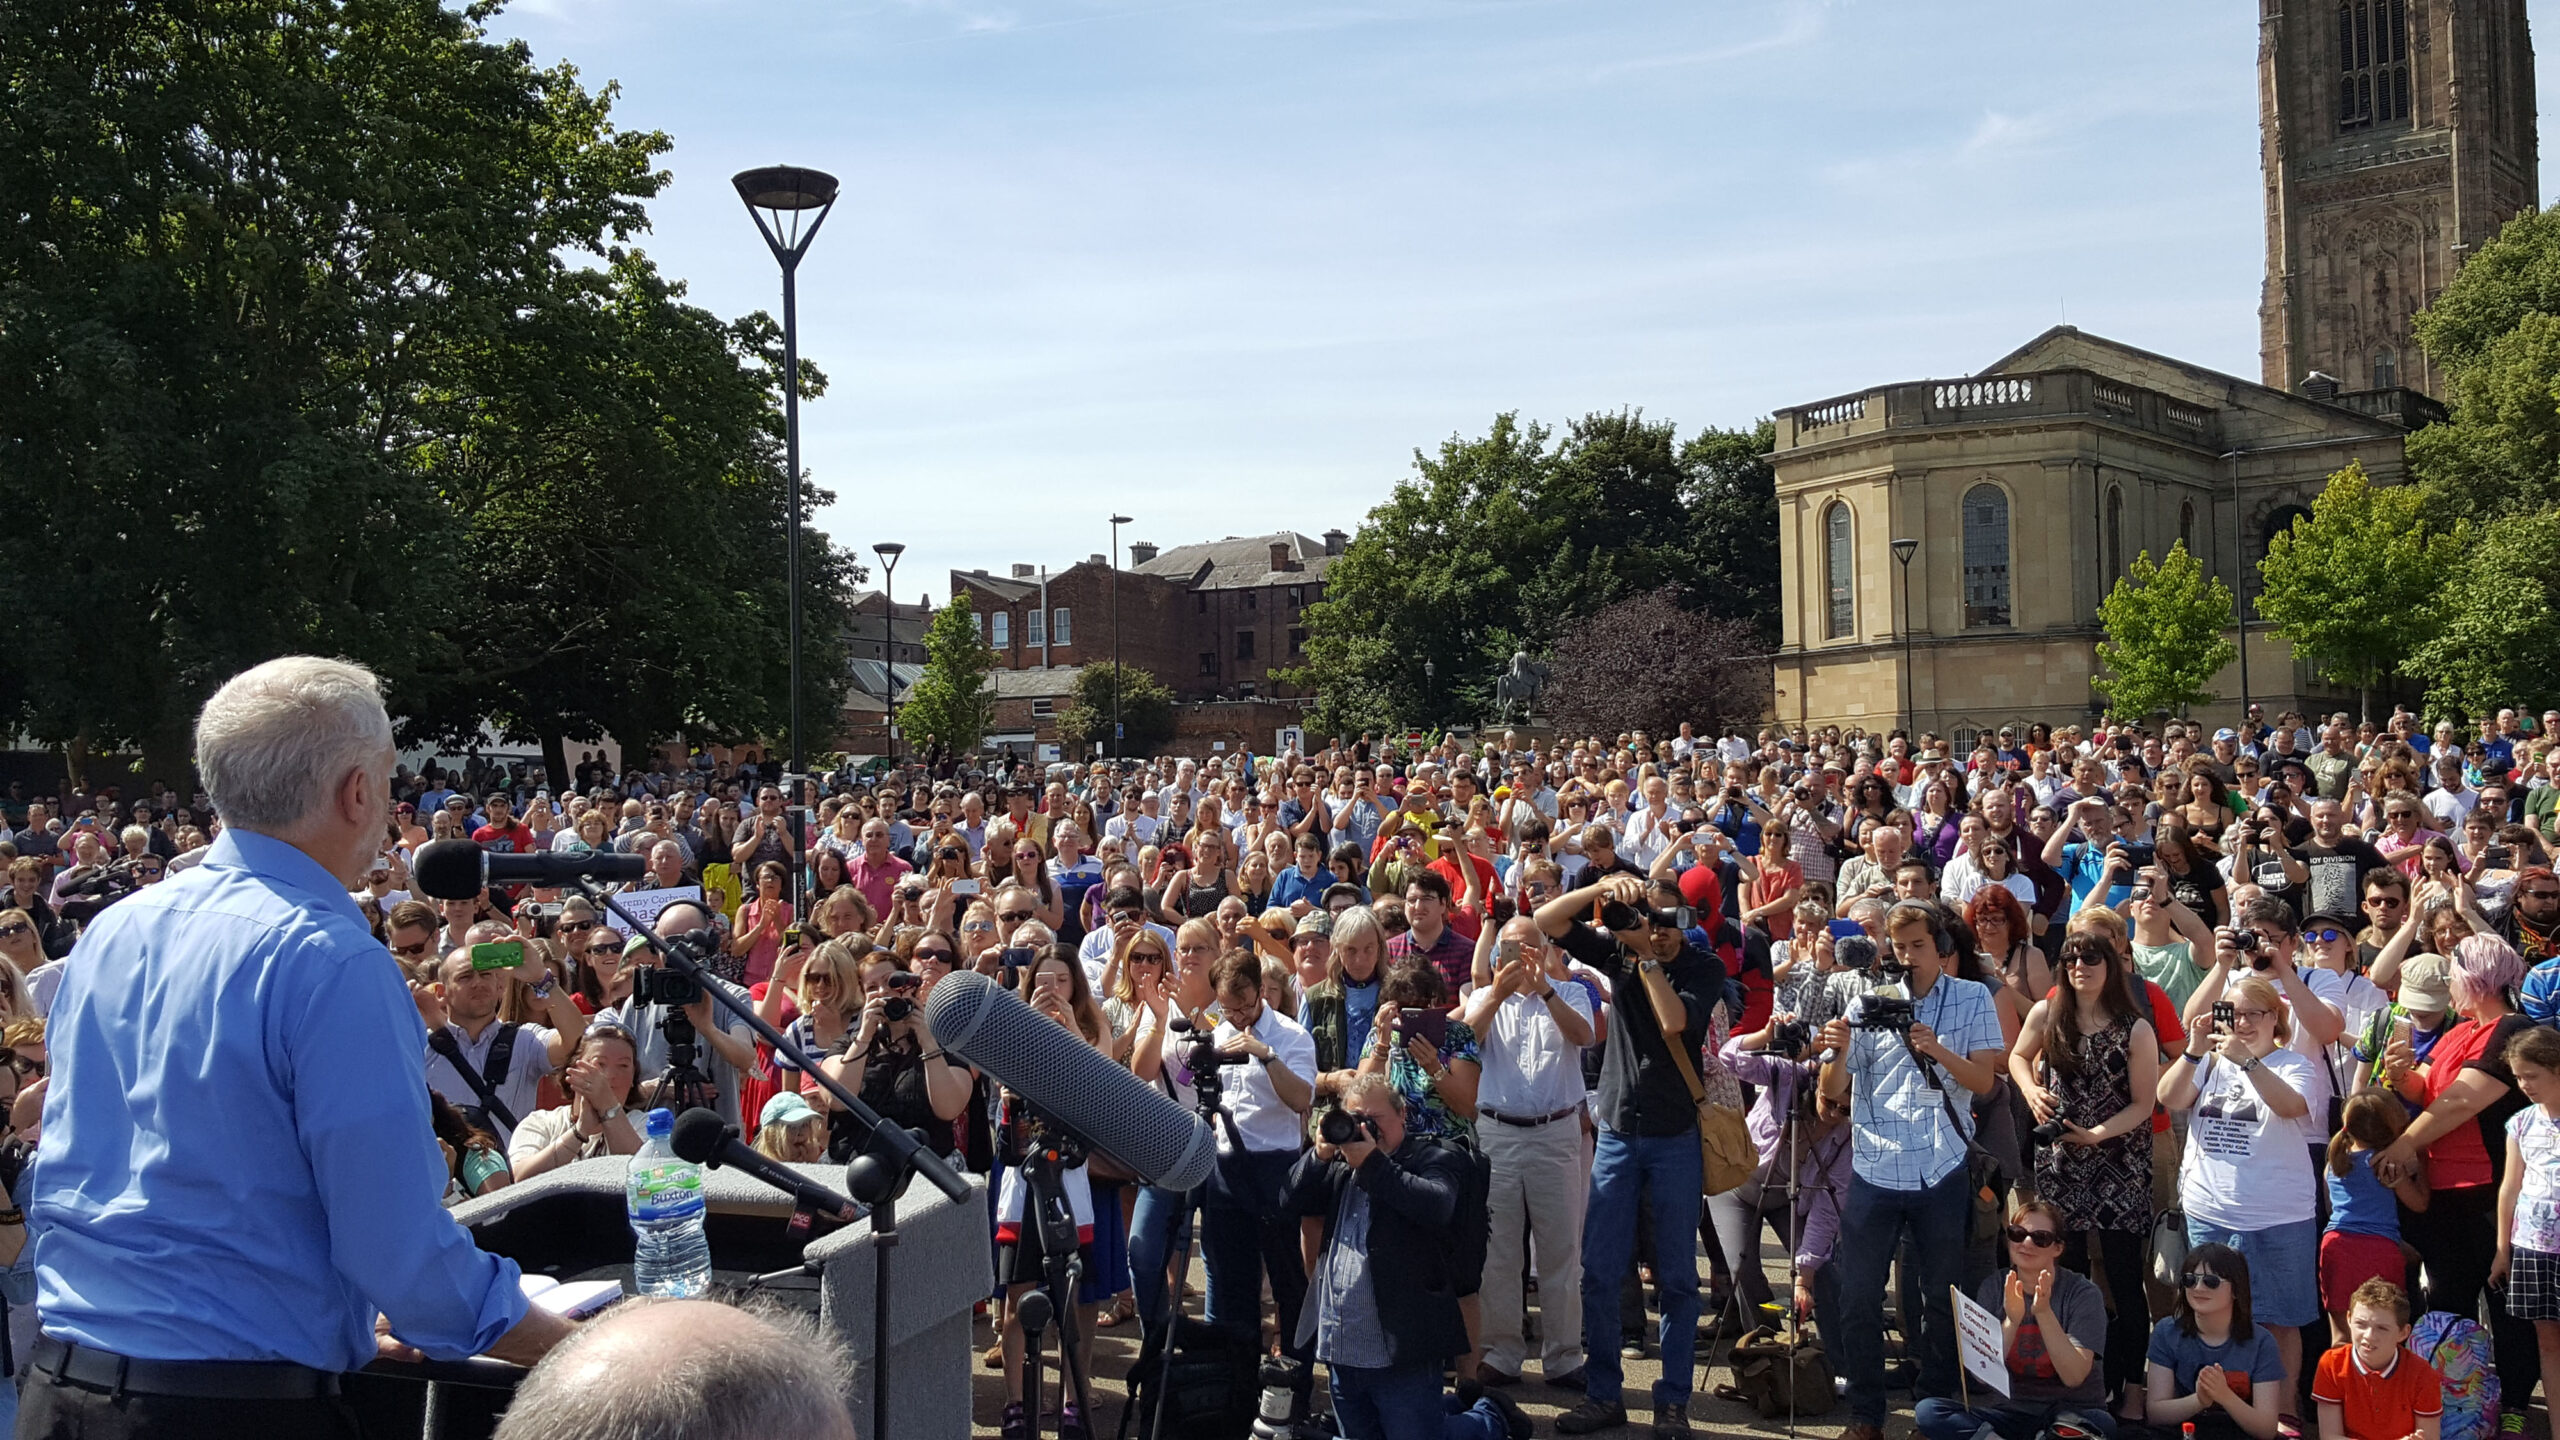 Jeremy Corbyn rally in Derby, August 2016 (uploaded 26/06/2017)